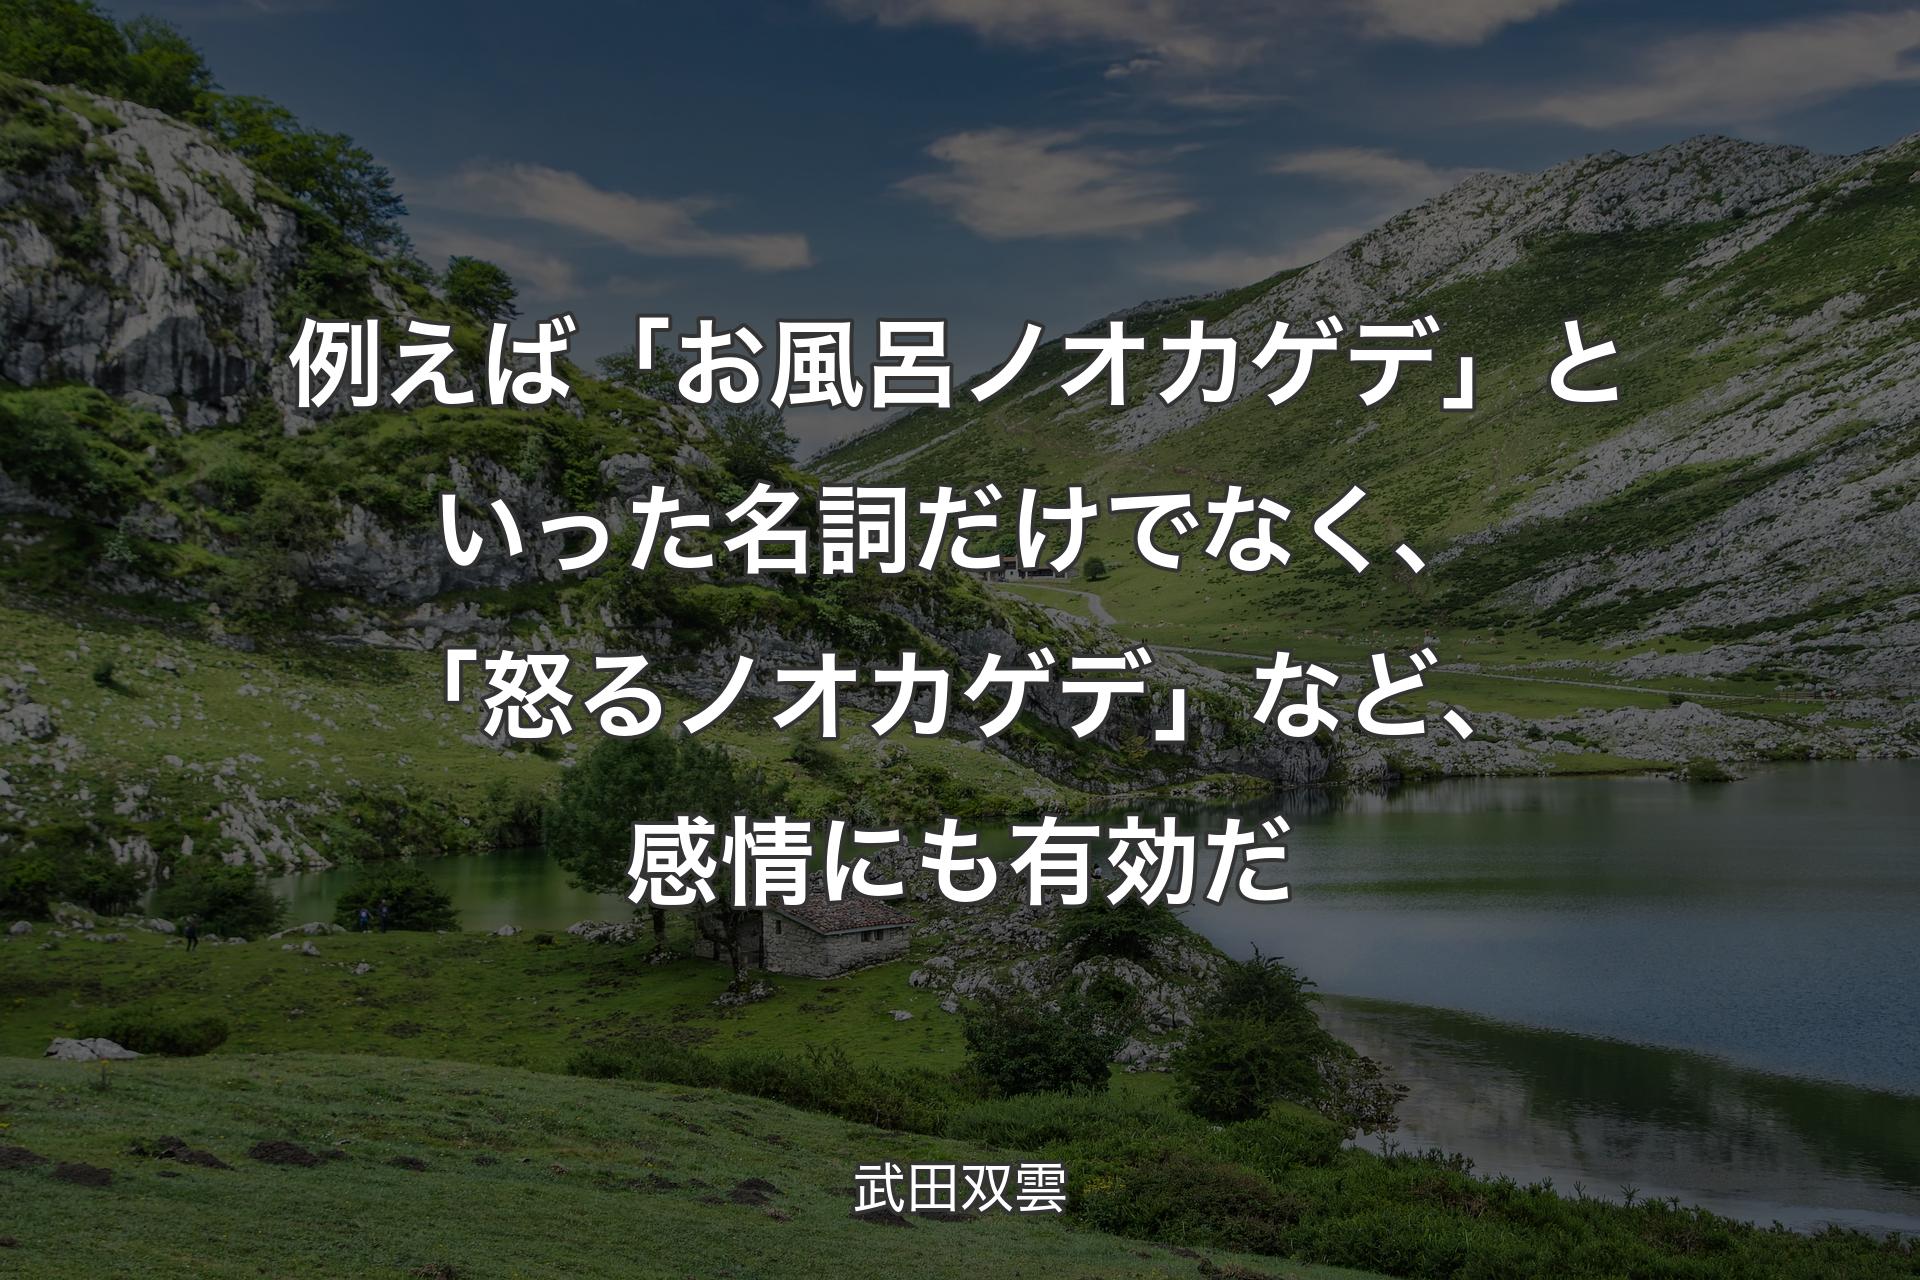 【背景1】例えば「お風呂ノオカゲデ」といった名詞だけでなく、「怒るノオカゲデ」など、感情にも有効だ - 武田双雲